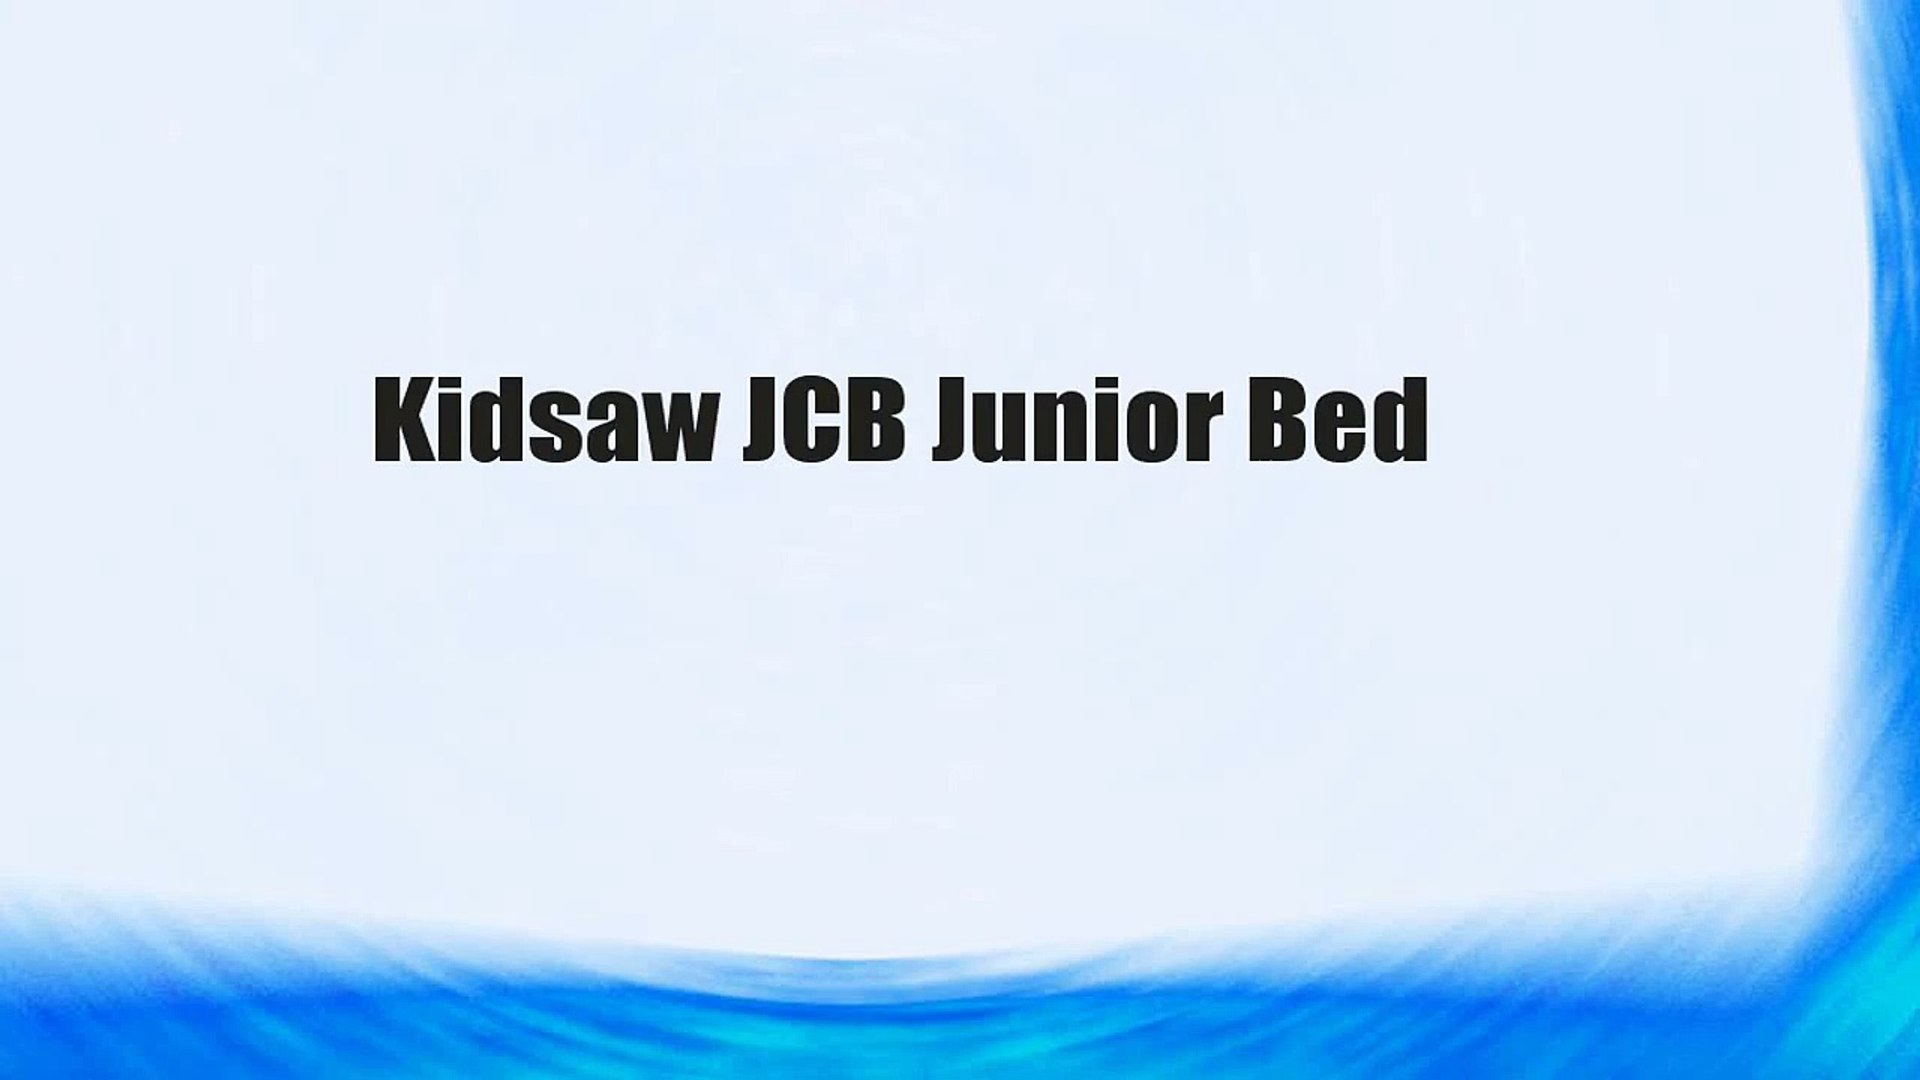 jcb junior bed